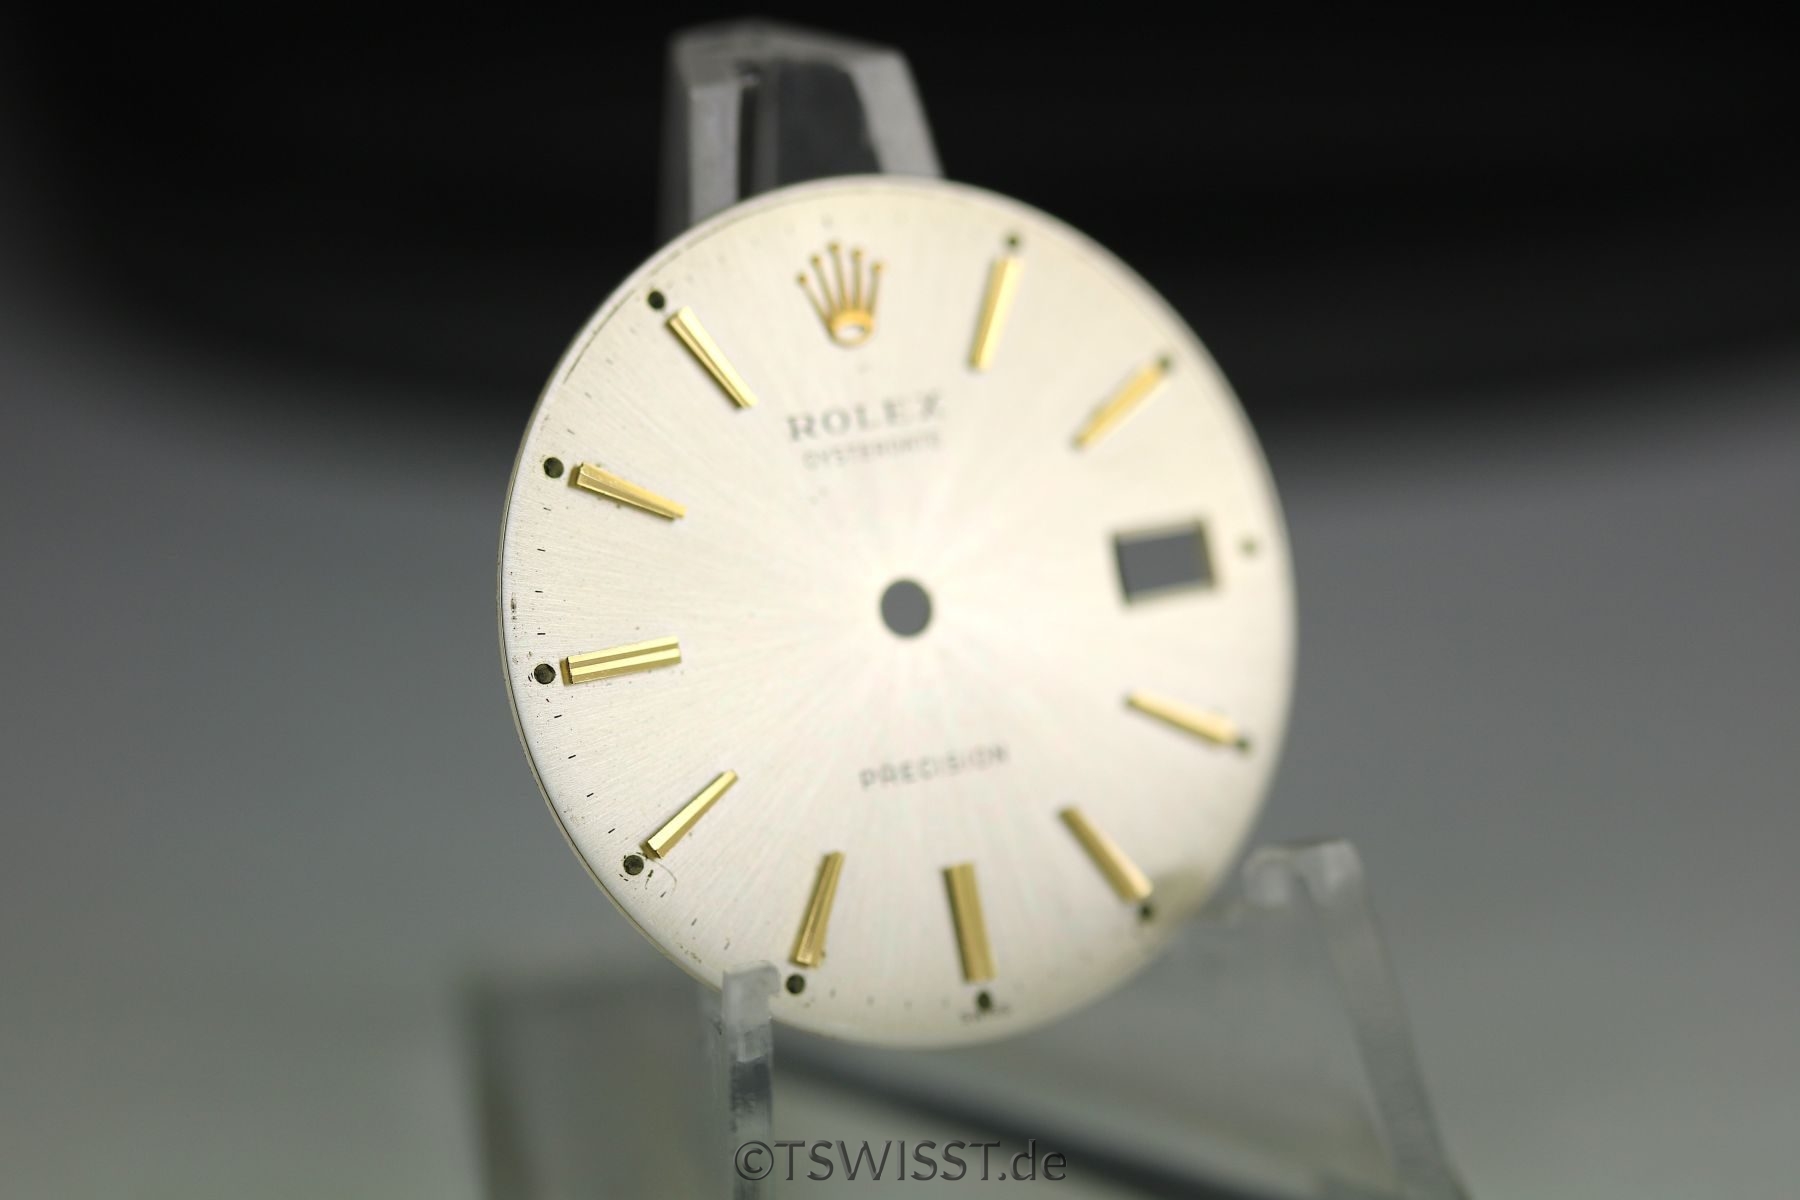 Rolex Precision dial